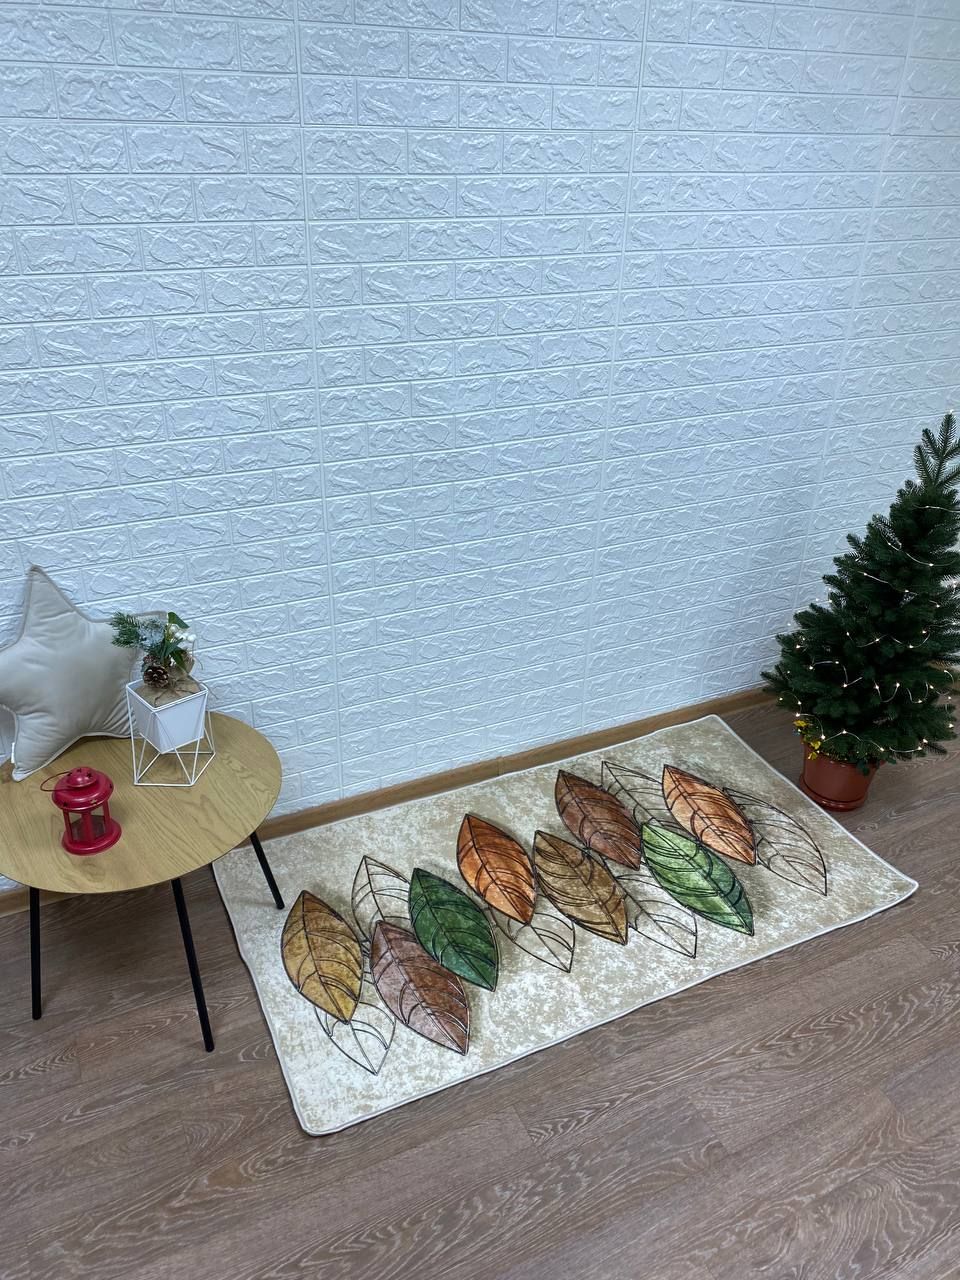 Турецкий безворсовой коврик "осенние листочки" подкладка из эко-кожи 80х200см